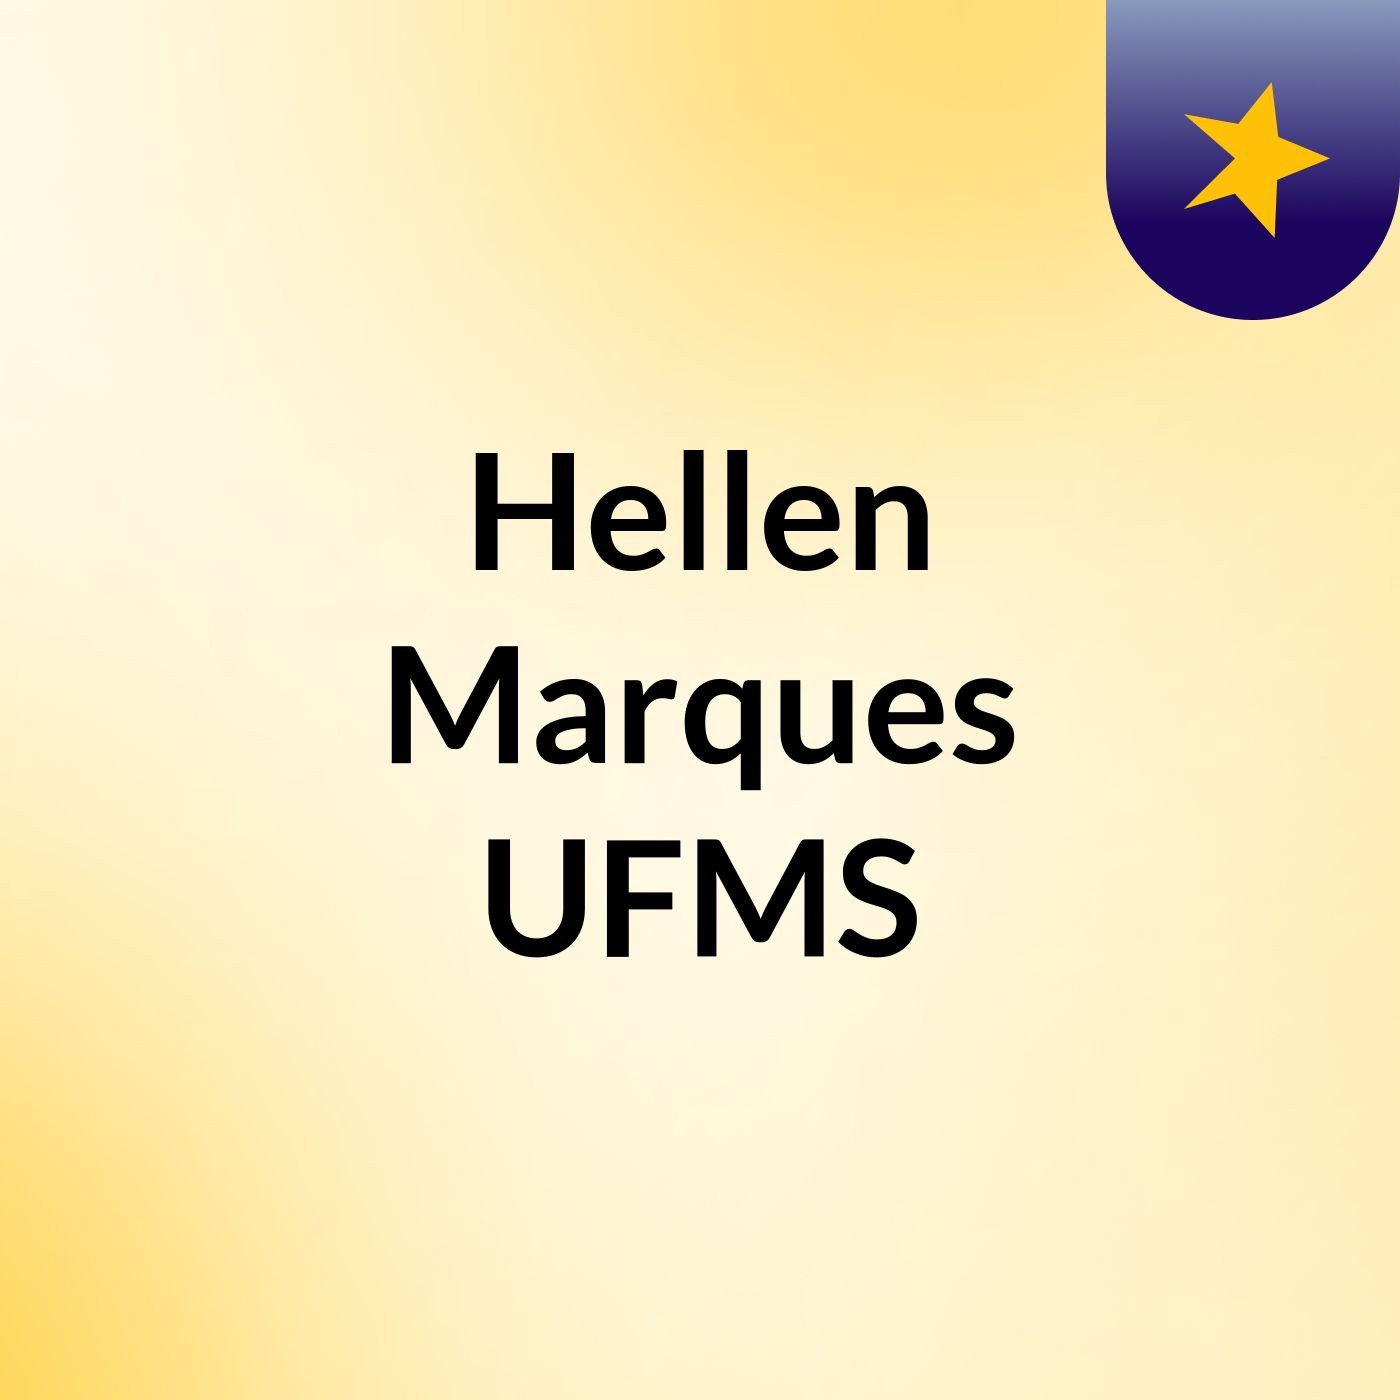 Hellen Marques UFMS